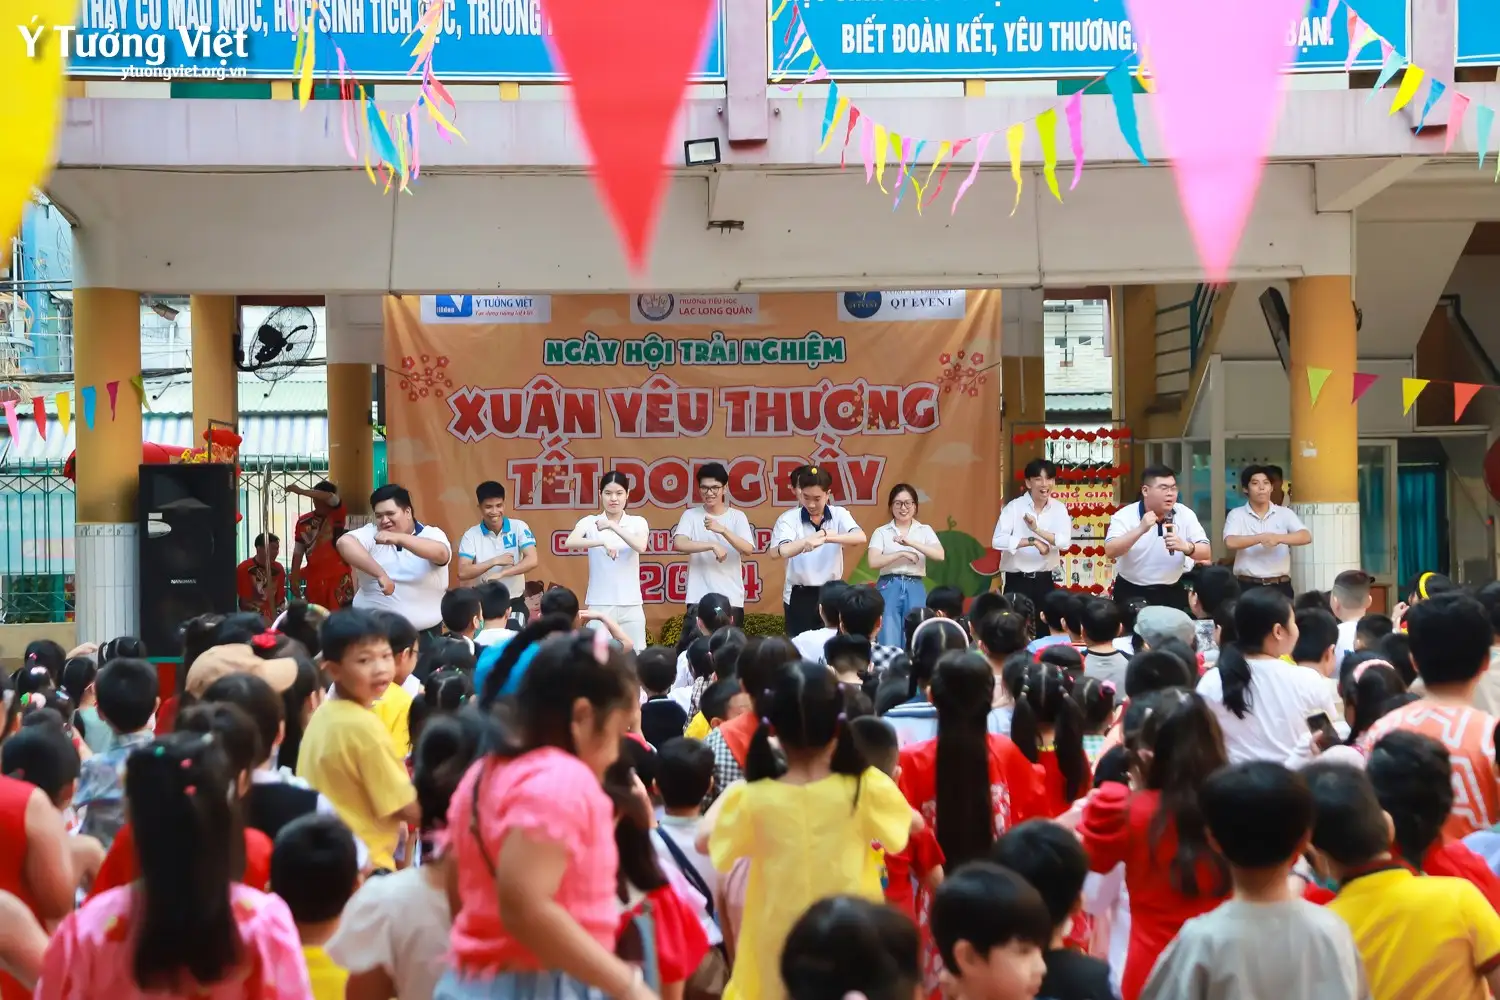 | Mừng Xuân yêu thương – Vui Tết trải nghiệm | Chiếc hẹn đón xuân của Ý Tưởng Việt cùng các bạn nhỏ trường TH Lạc Long Quân